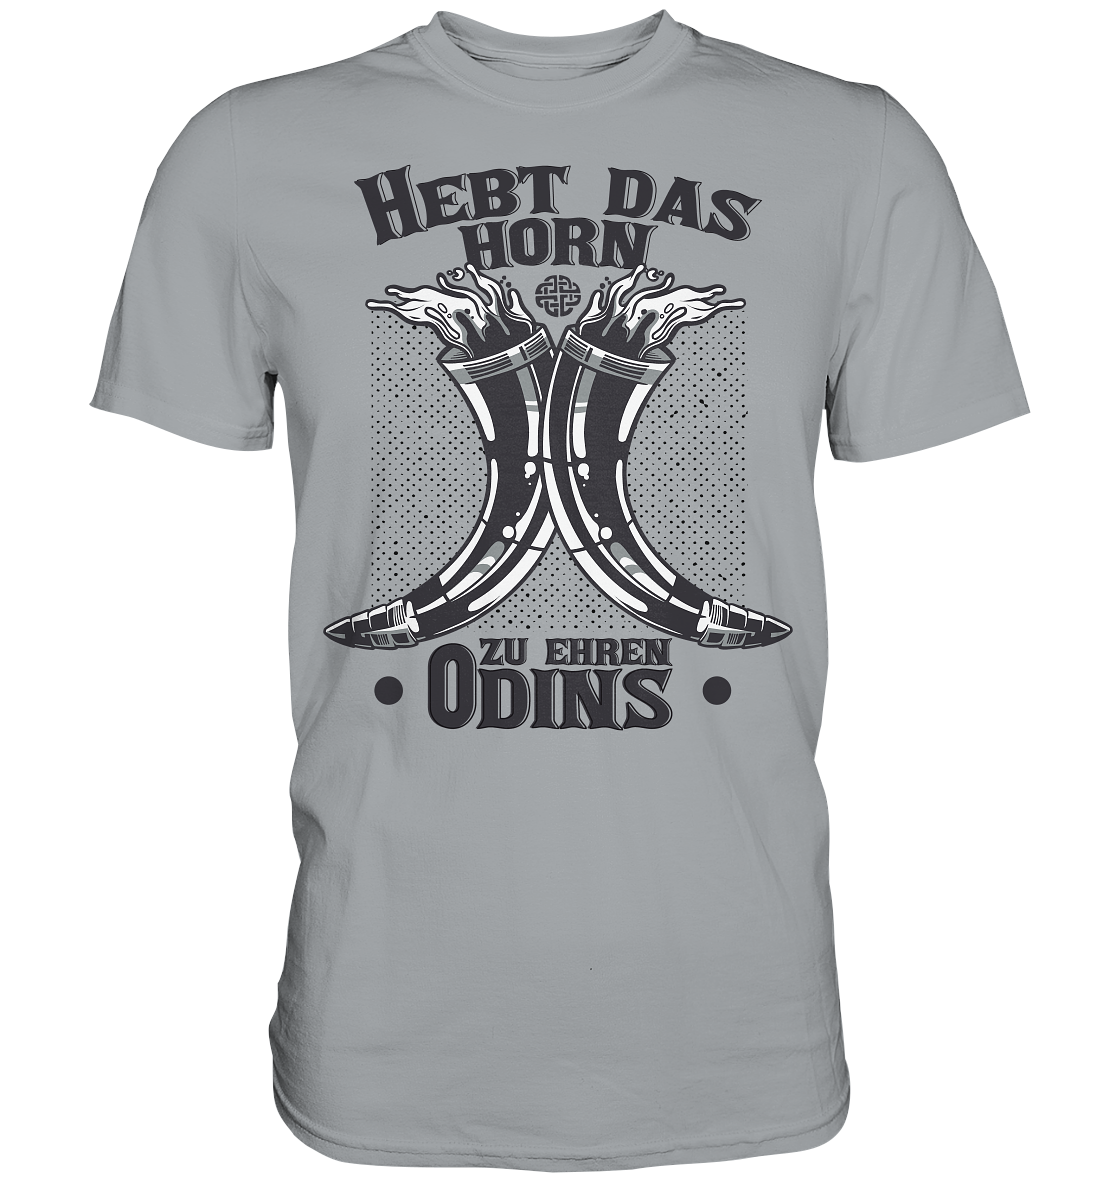 Hebt das Horn zu Ehren Odins - Classic Shirt